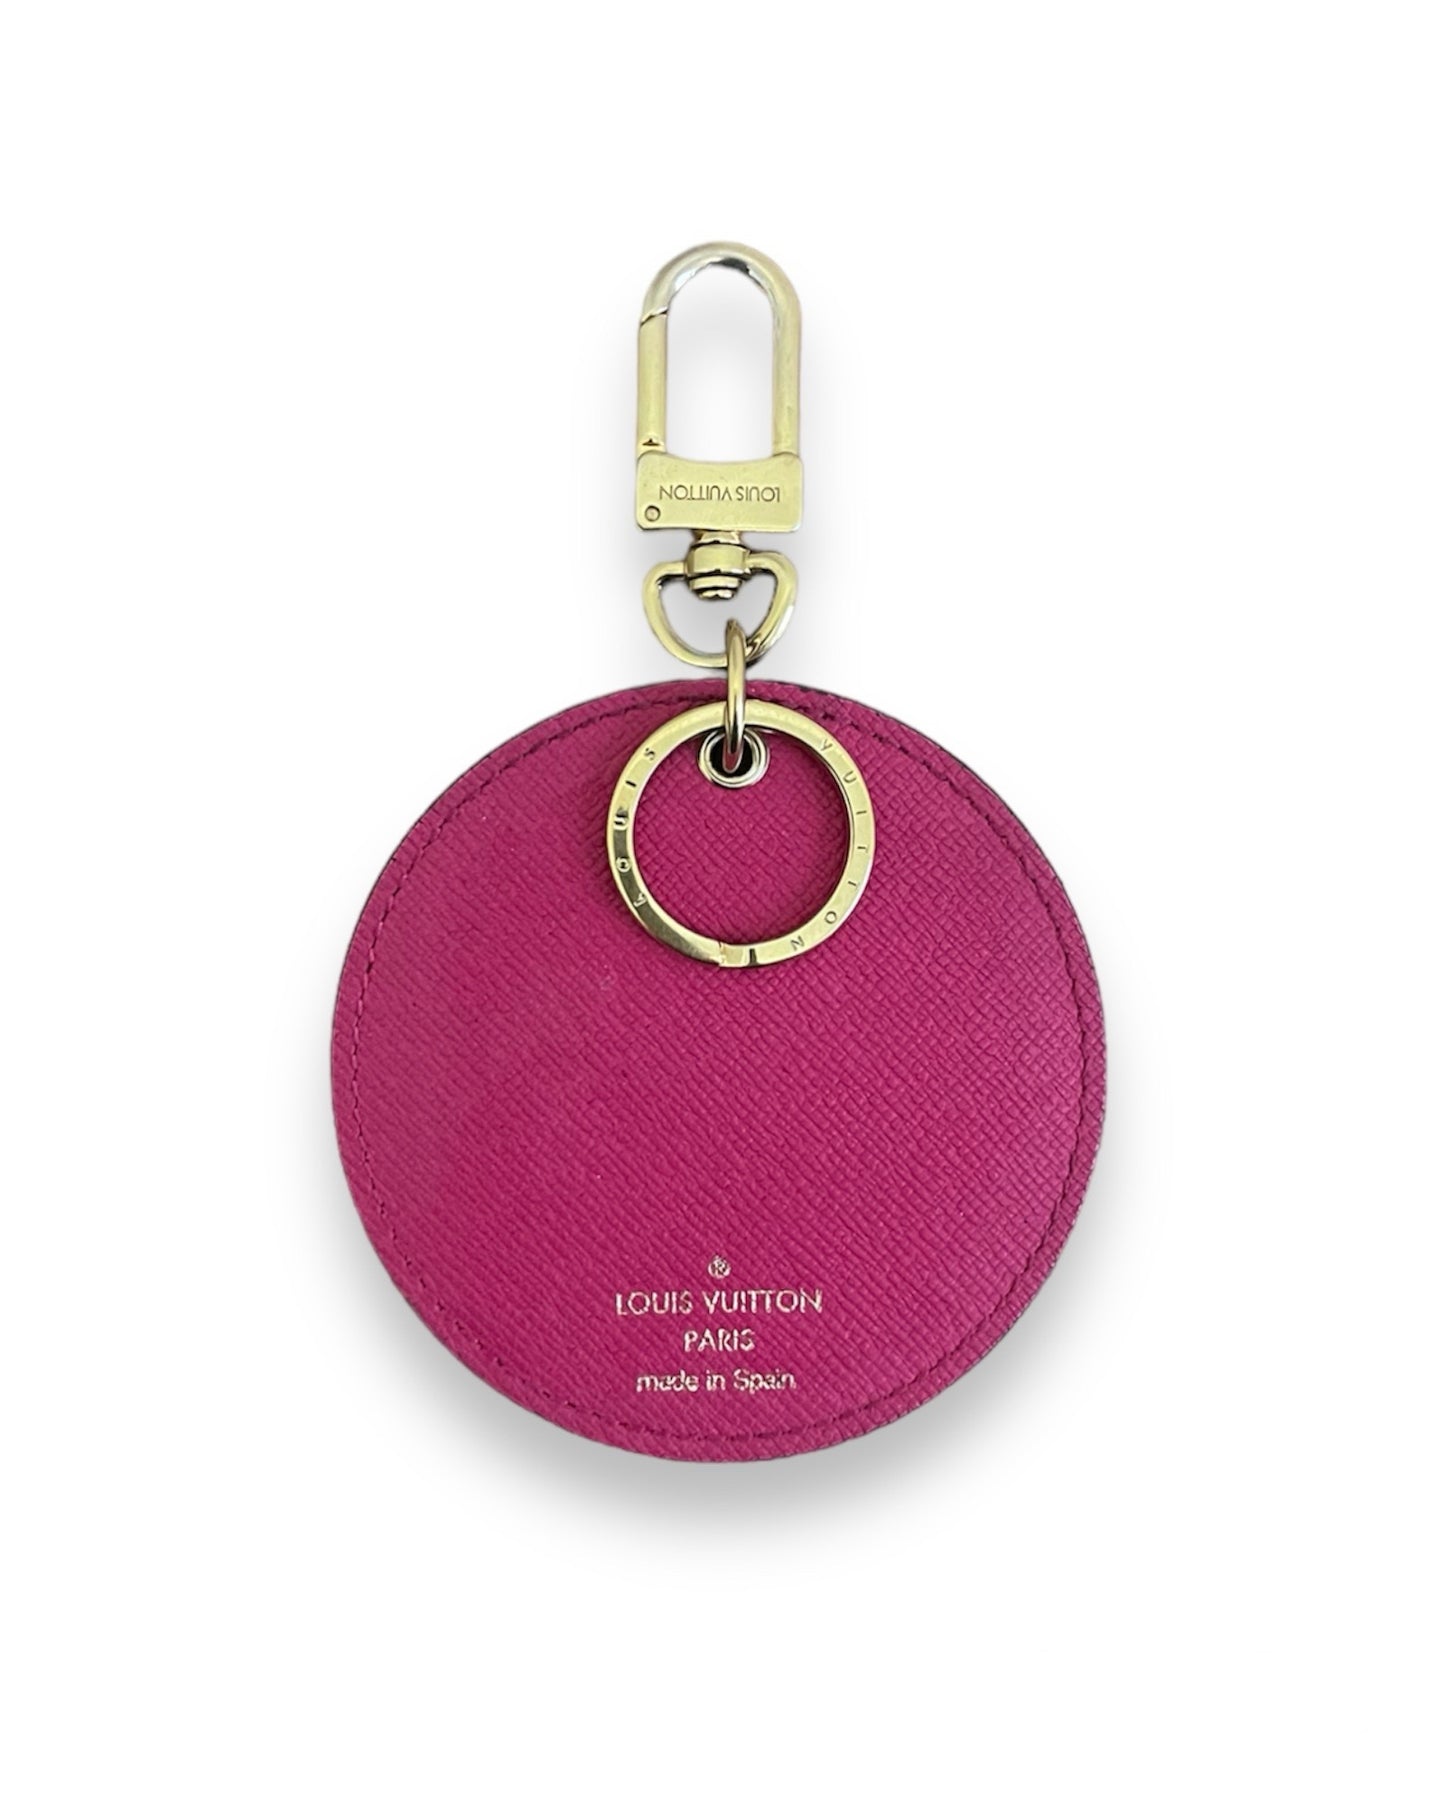 Porte-clés et bijou de sac en monogram LV réversible rose.